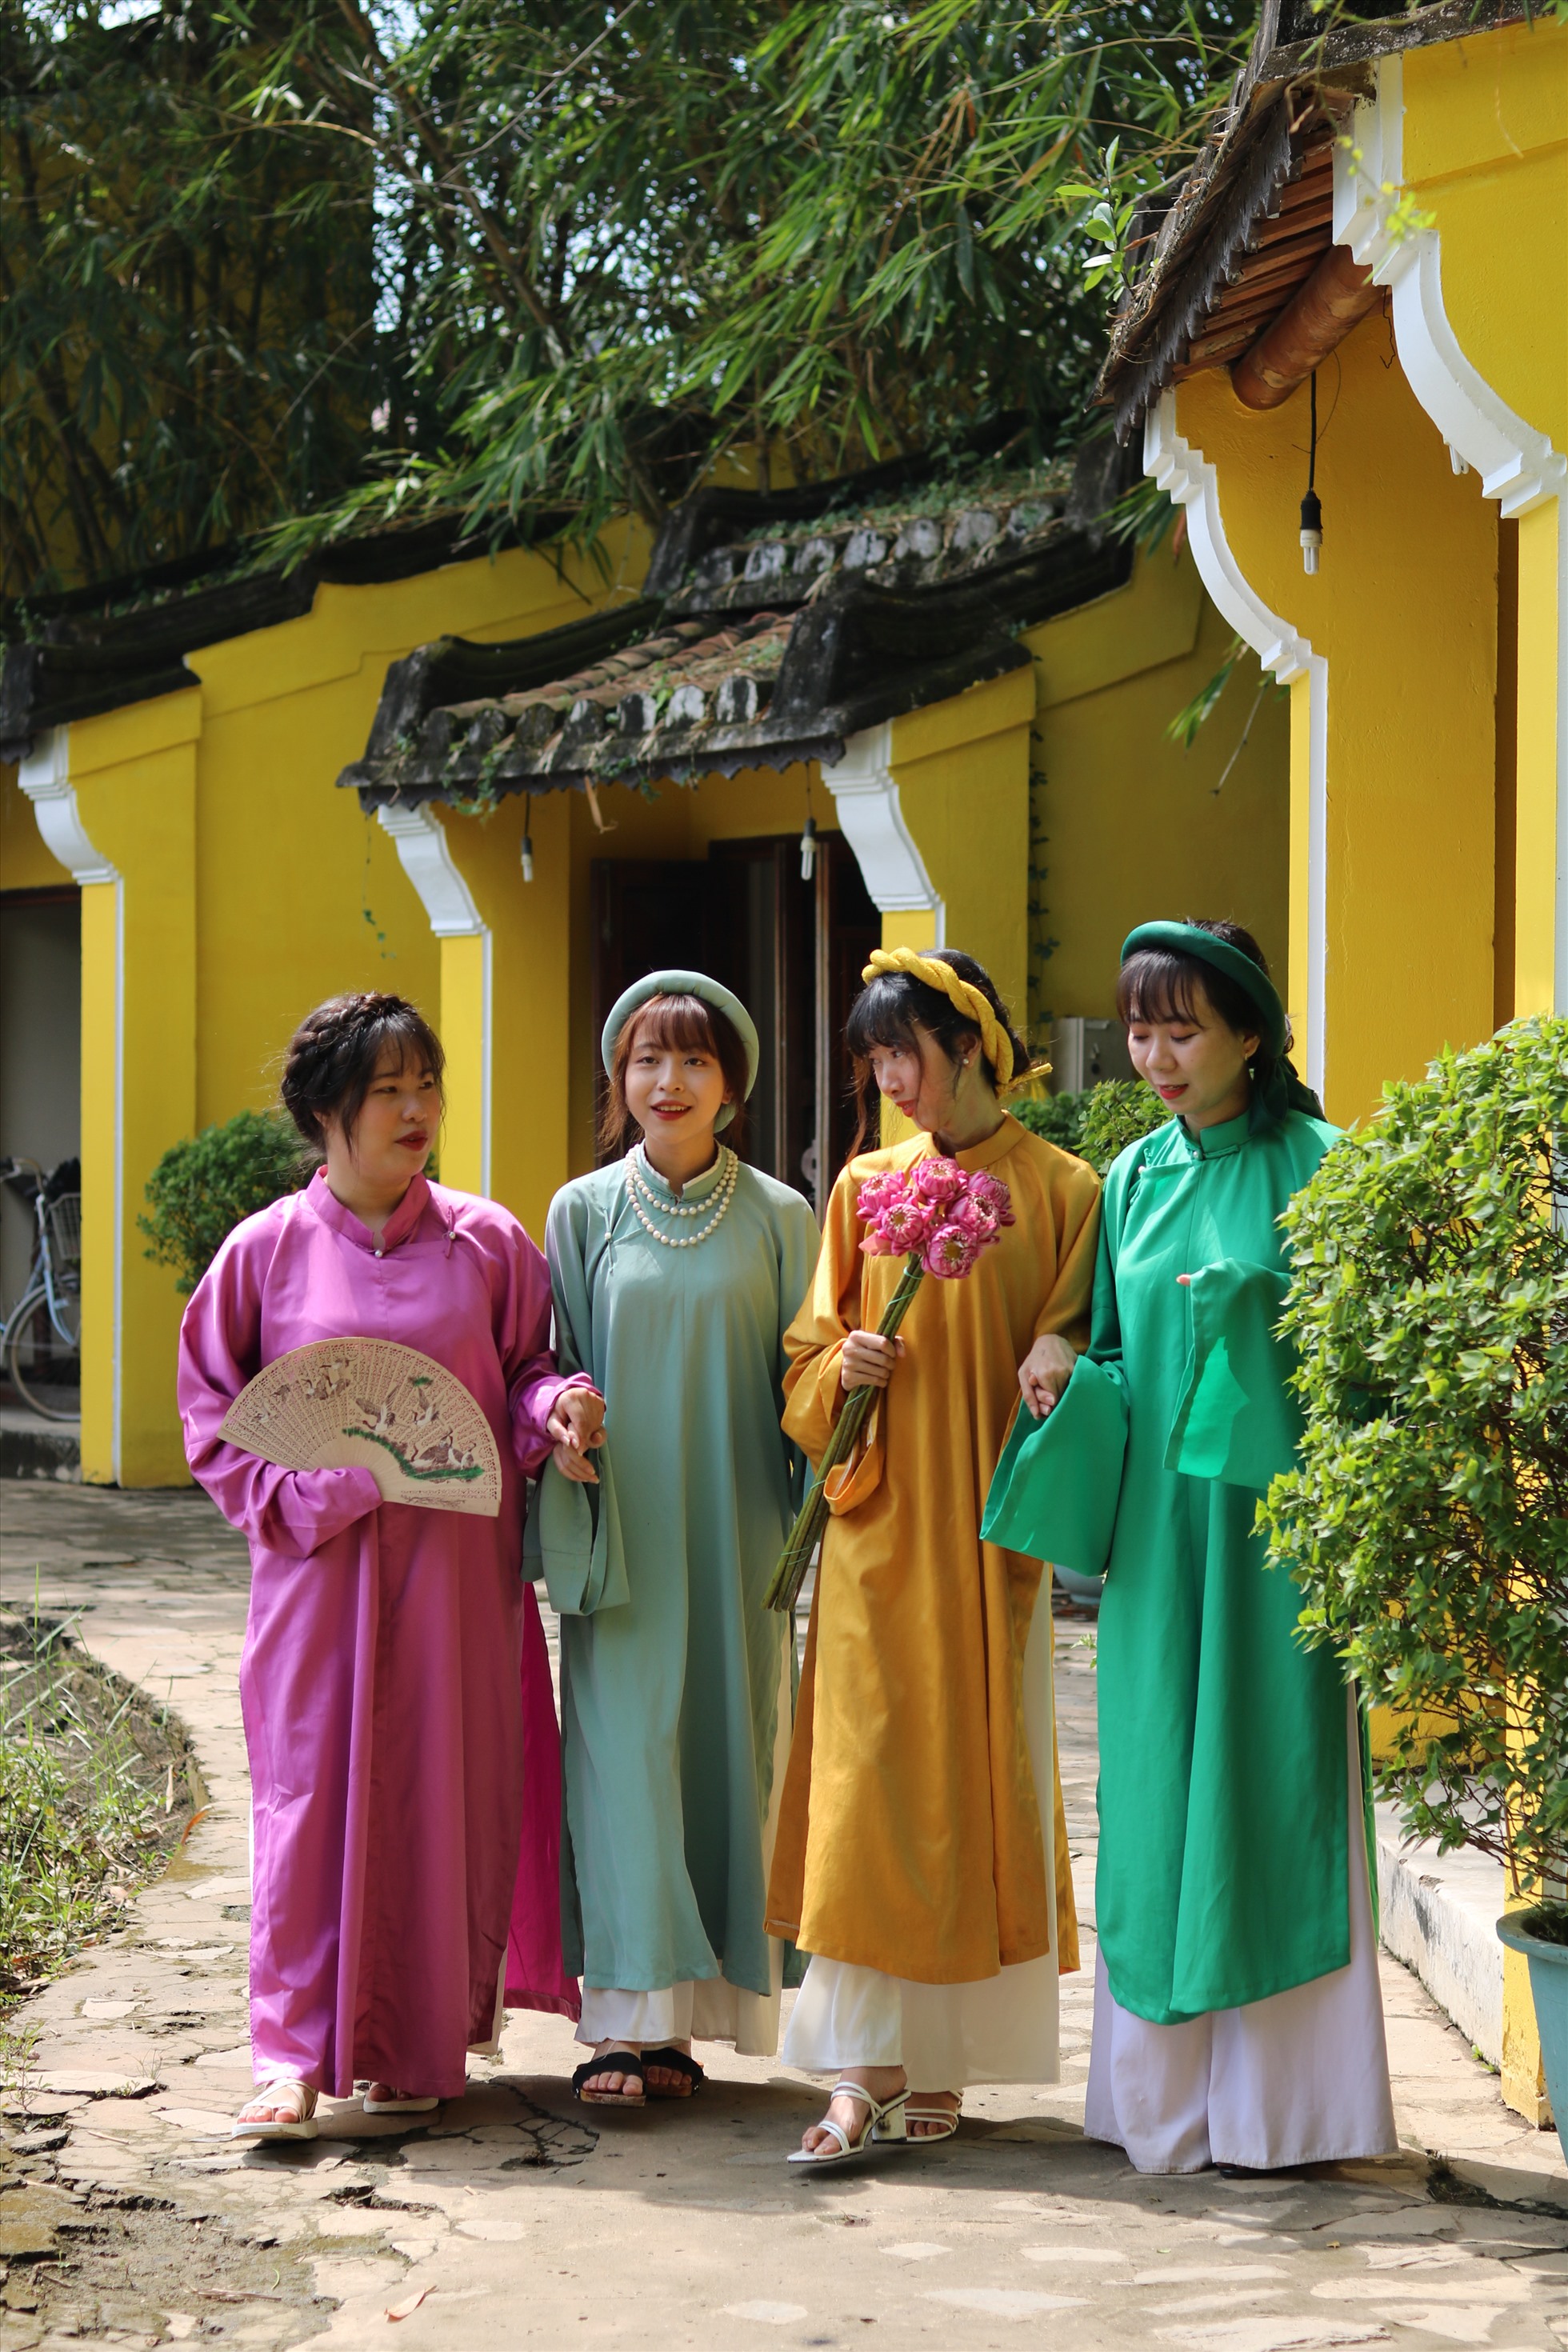 Vào những ngày lễ - tết, người Việt có xu hướng chọn áo dài cùng đồng hành để tham dự.  Từ những nghi lễ trang trọng trong gia đình, công sở, xã hội, ngoại giao… đến cả ngày quan trọng nhất đời người, hôn lễ, thì tà áo dài là vật không thể thiếu.